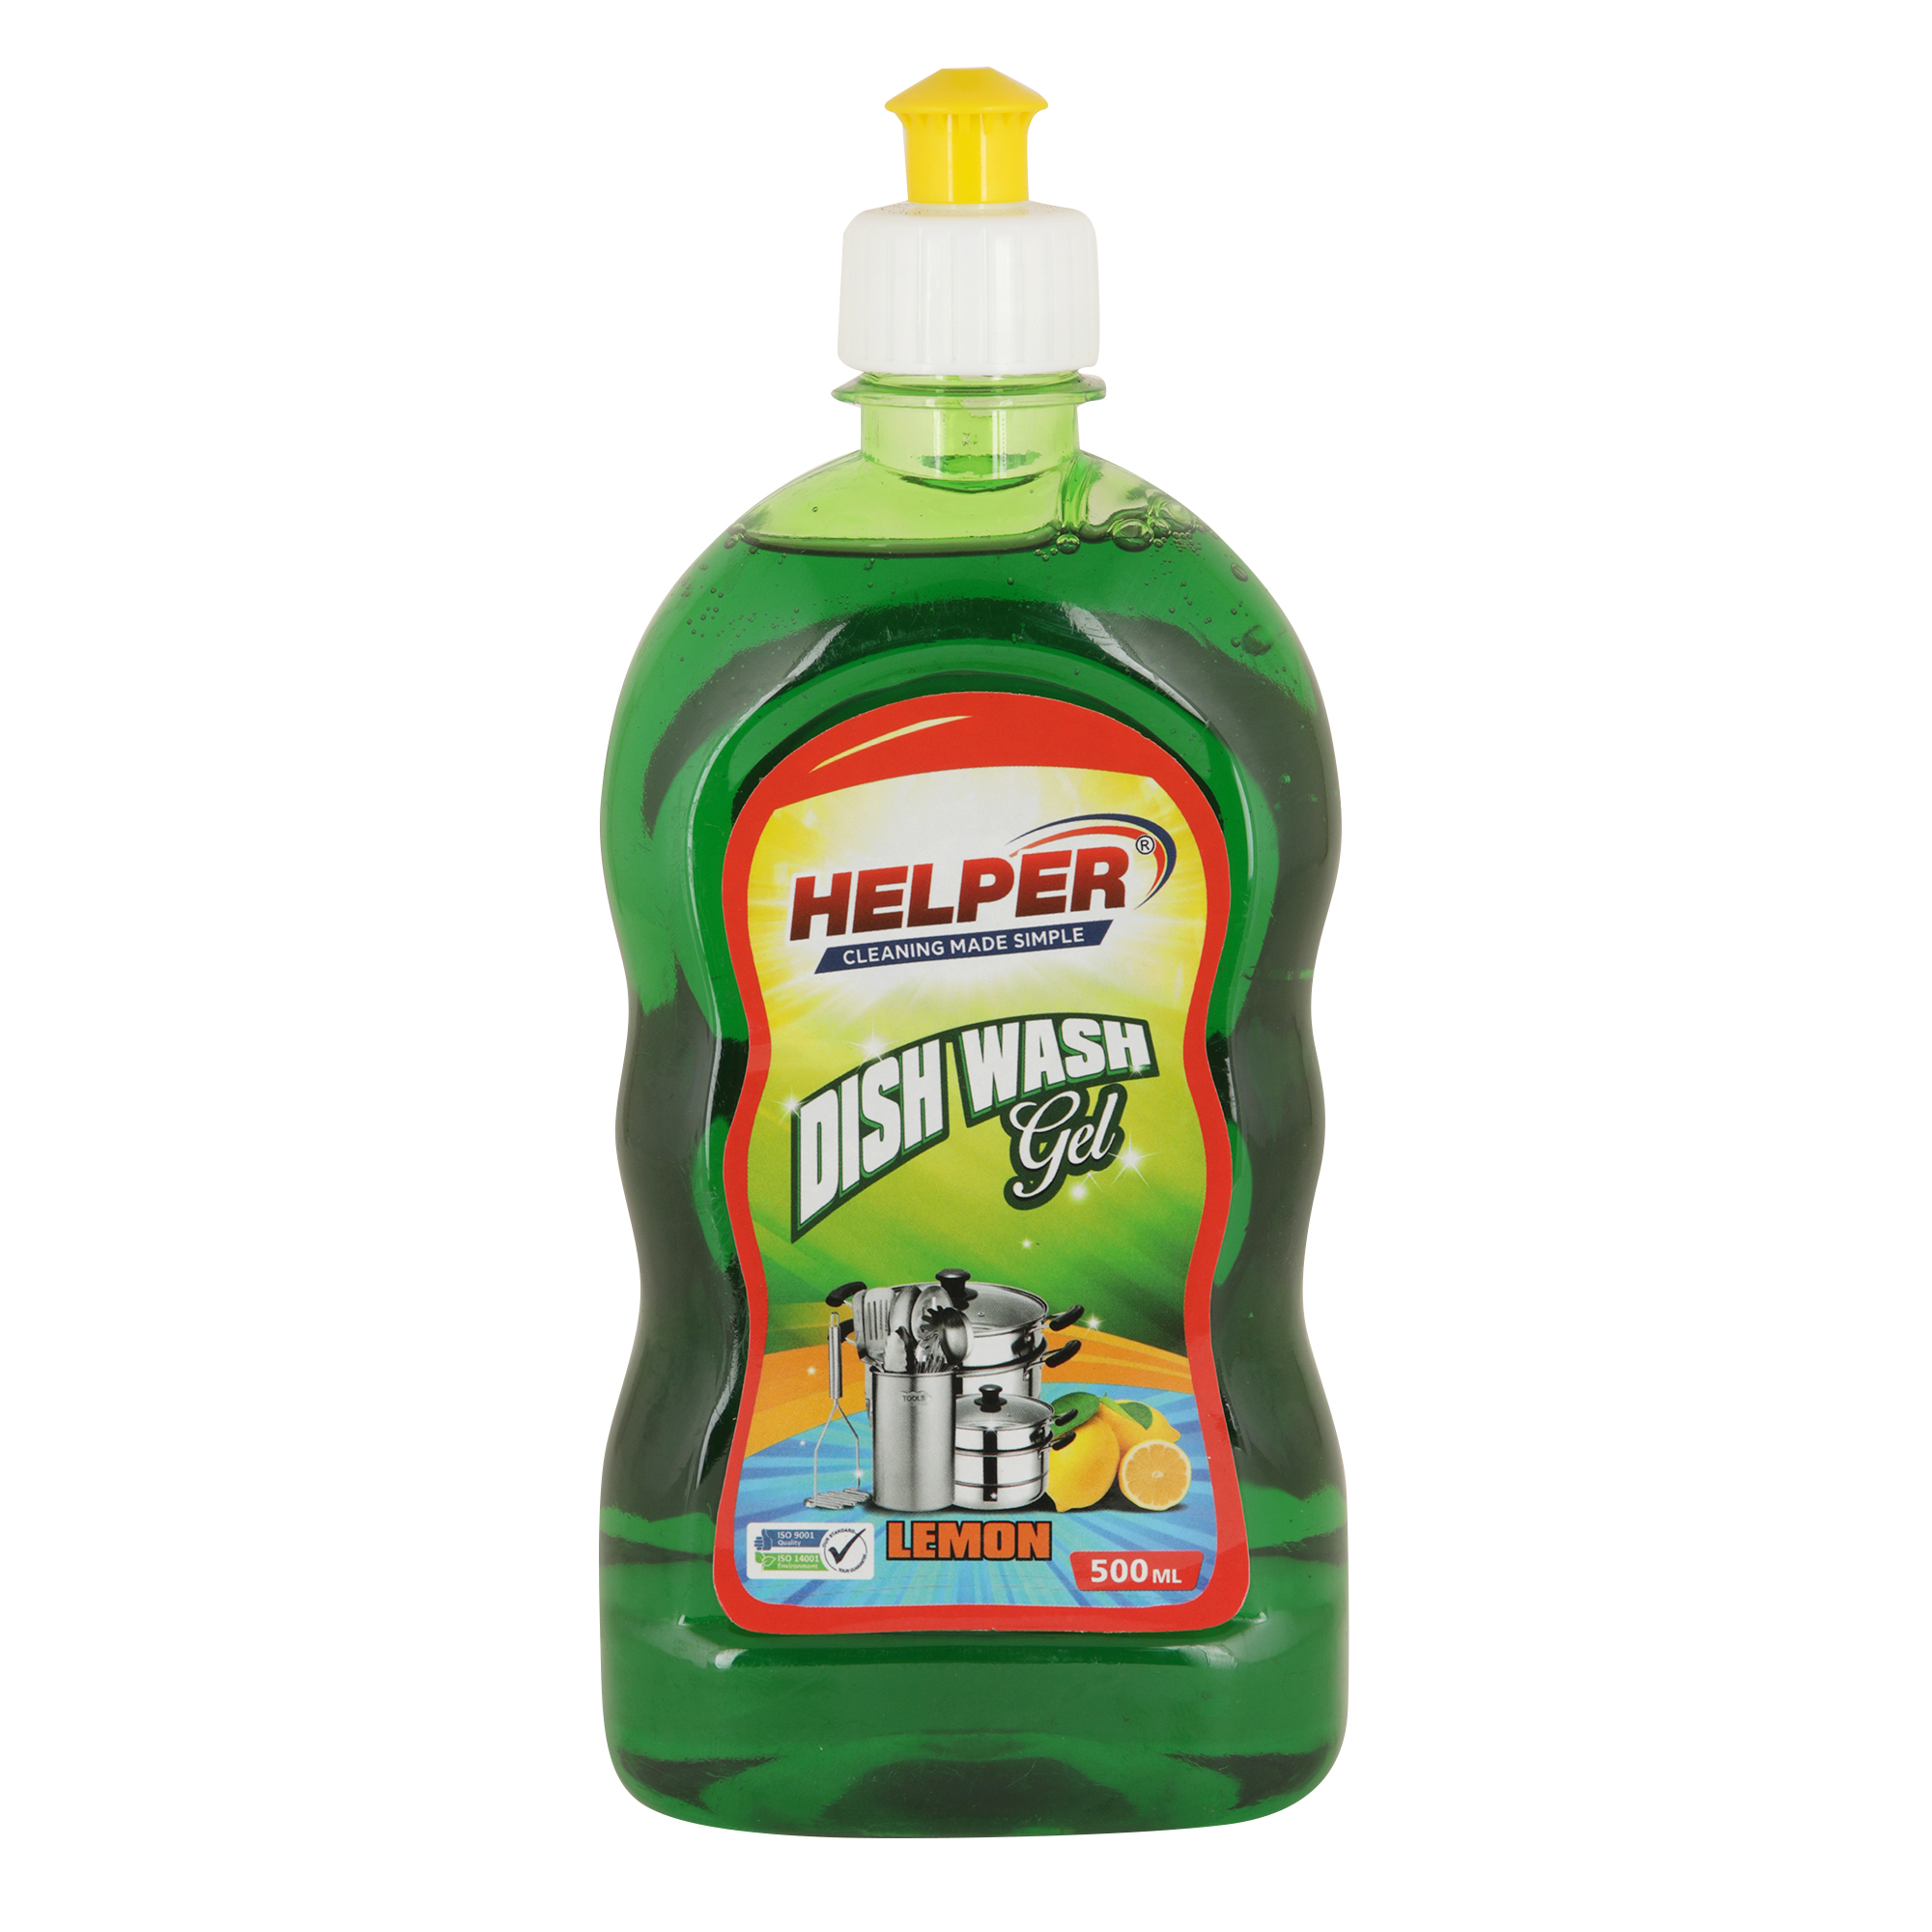 Helper Dish Wash Gel, Lemon (Green), 500ml Bottle